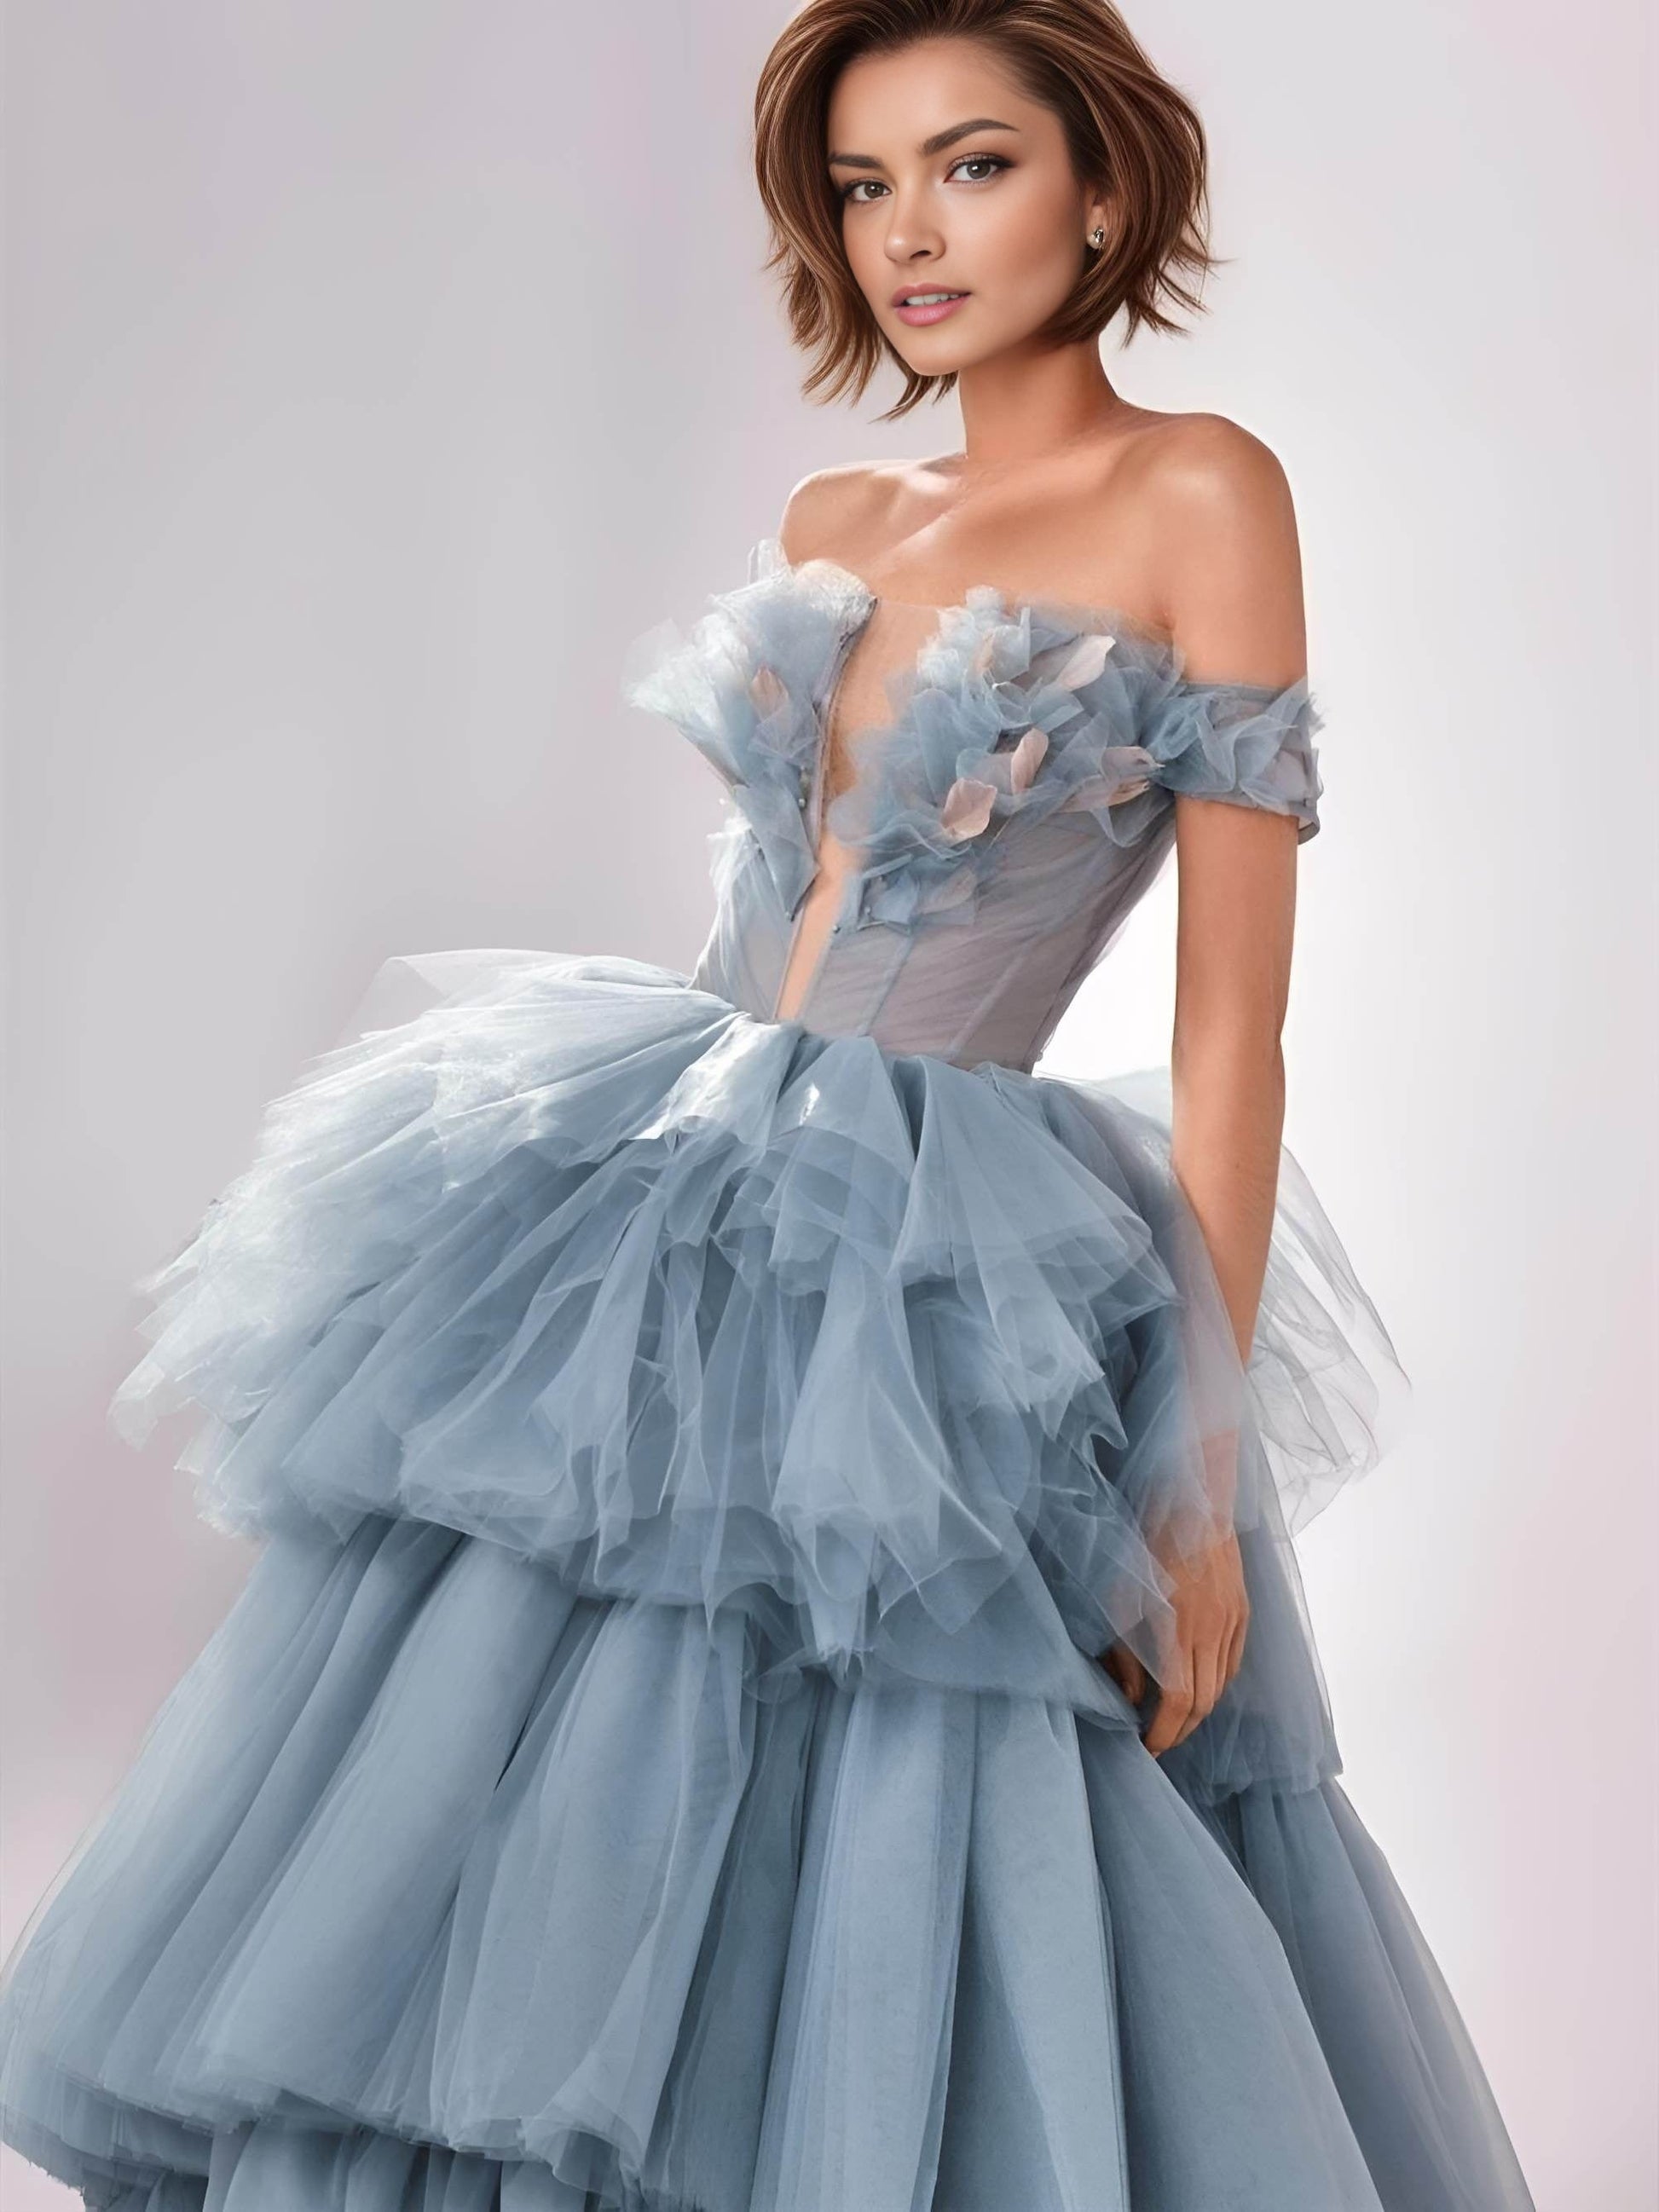 https://lulabridal.com/cdn/shop/files/arianna-formal-couture-dress-women-dresses-640.jpg?v=1705549572&width=1946